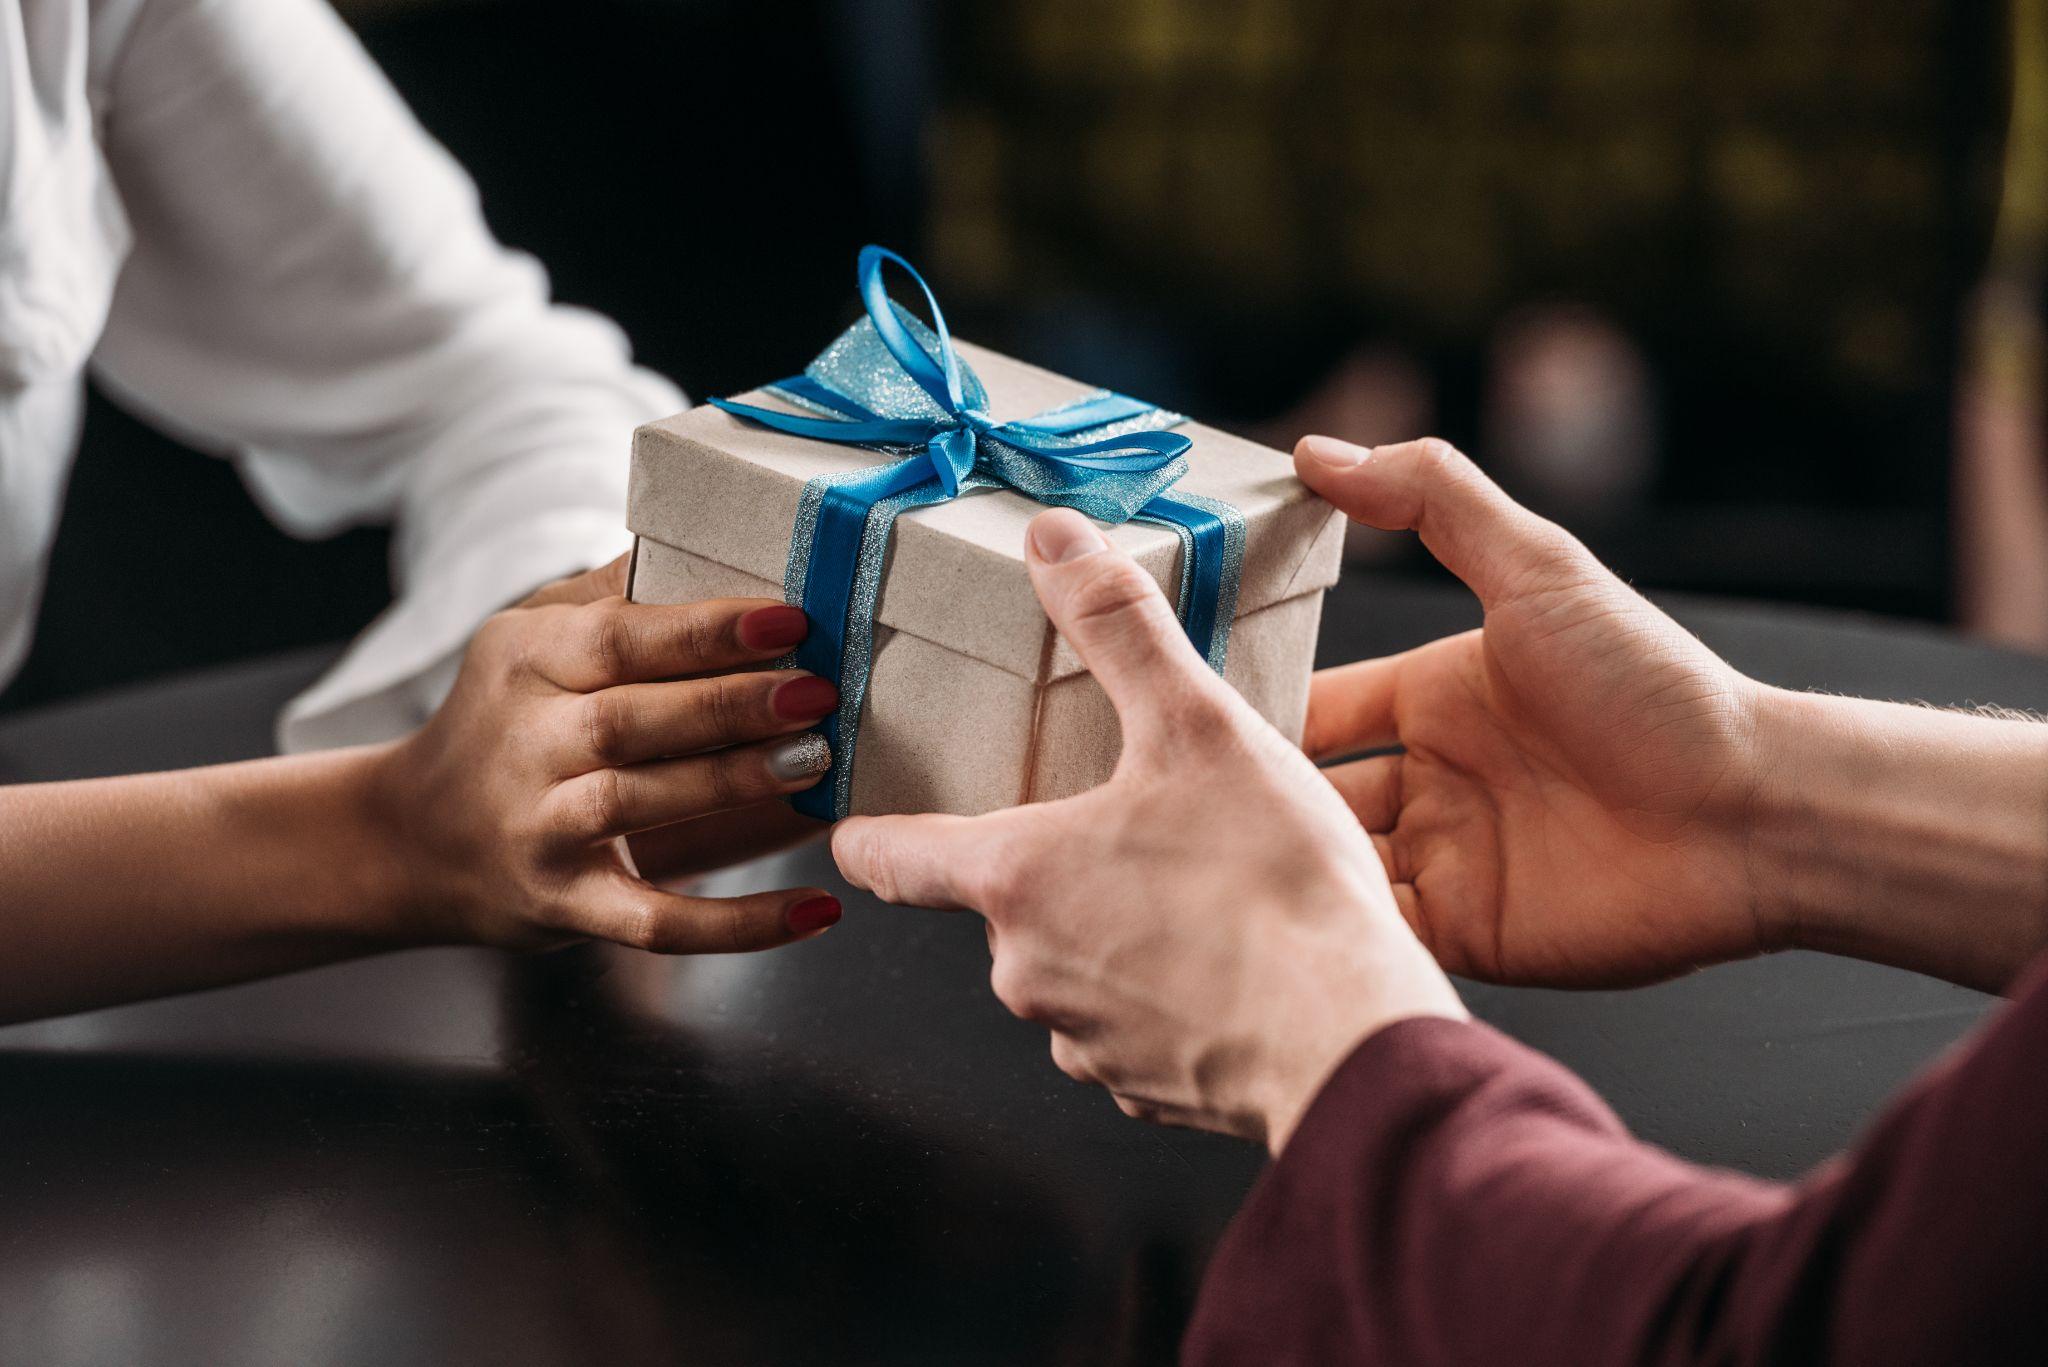 Кидаем подарки. Вручение подарка. Дарение подарков. Подарок в руках. Вручает подарок.